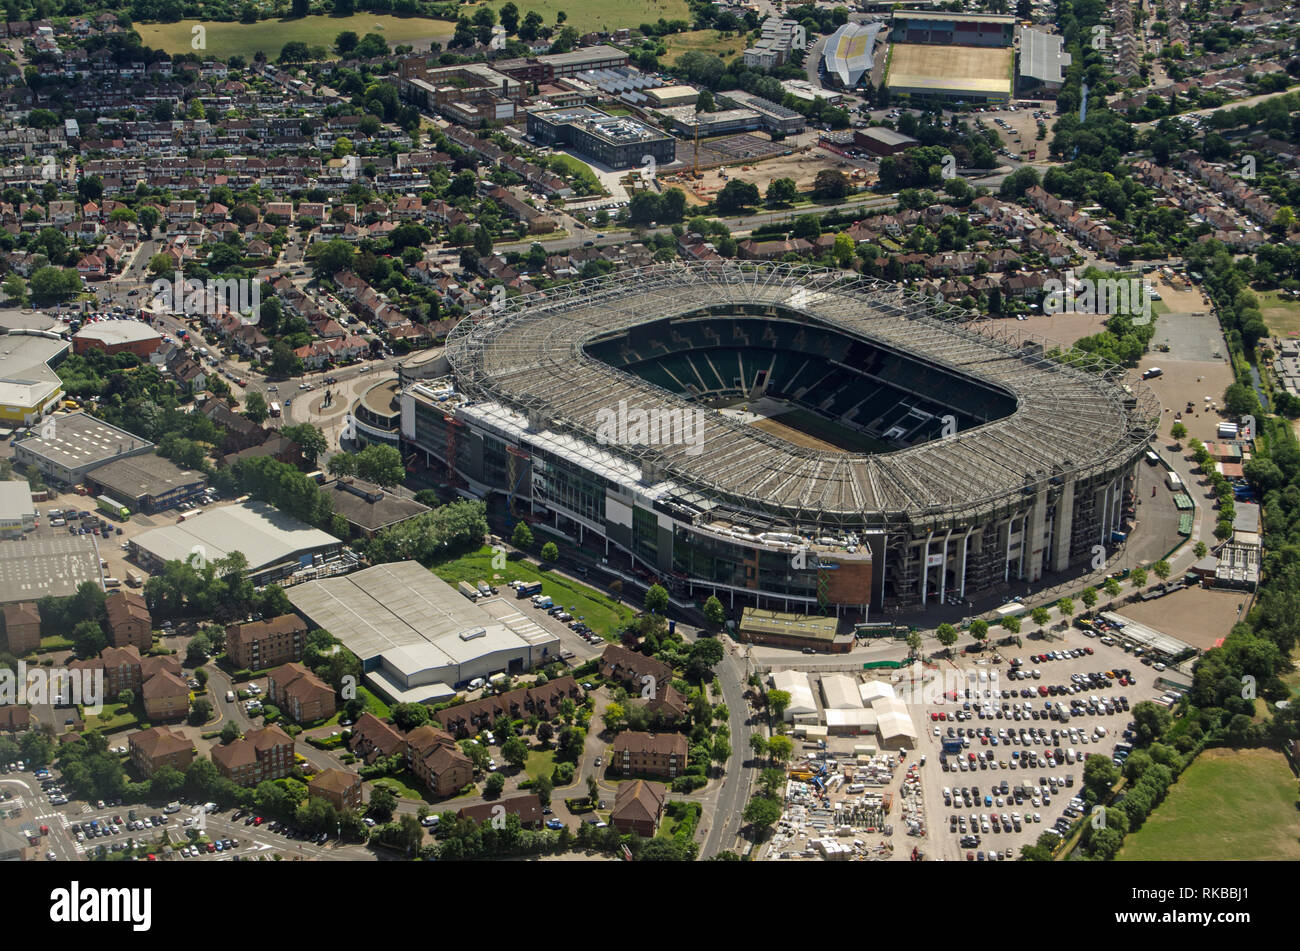 Vista aerea del famoso stadio di rugby di Twickenham, il sud ovest di Londra. Home dell'Inghilterra di Rugby Union. La minore Stoop Memorial polv Foto Stock